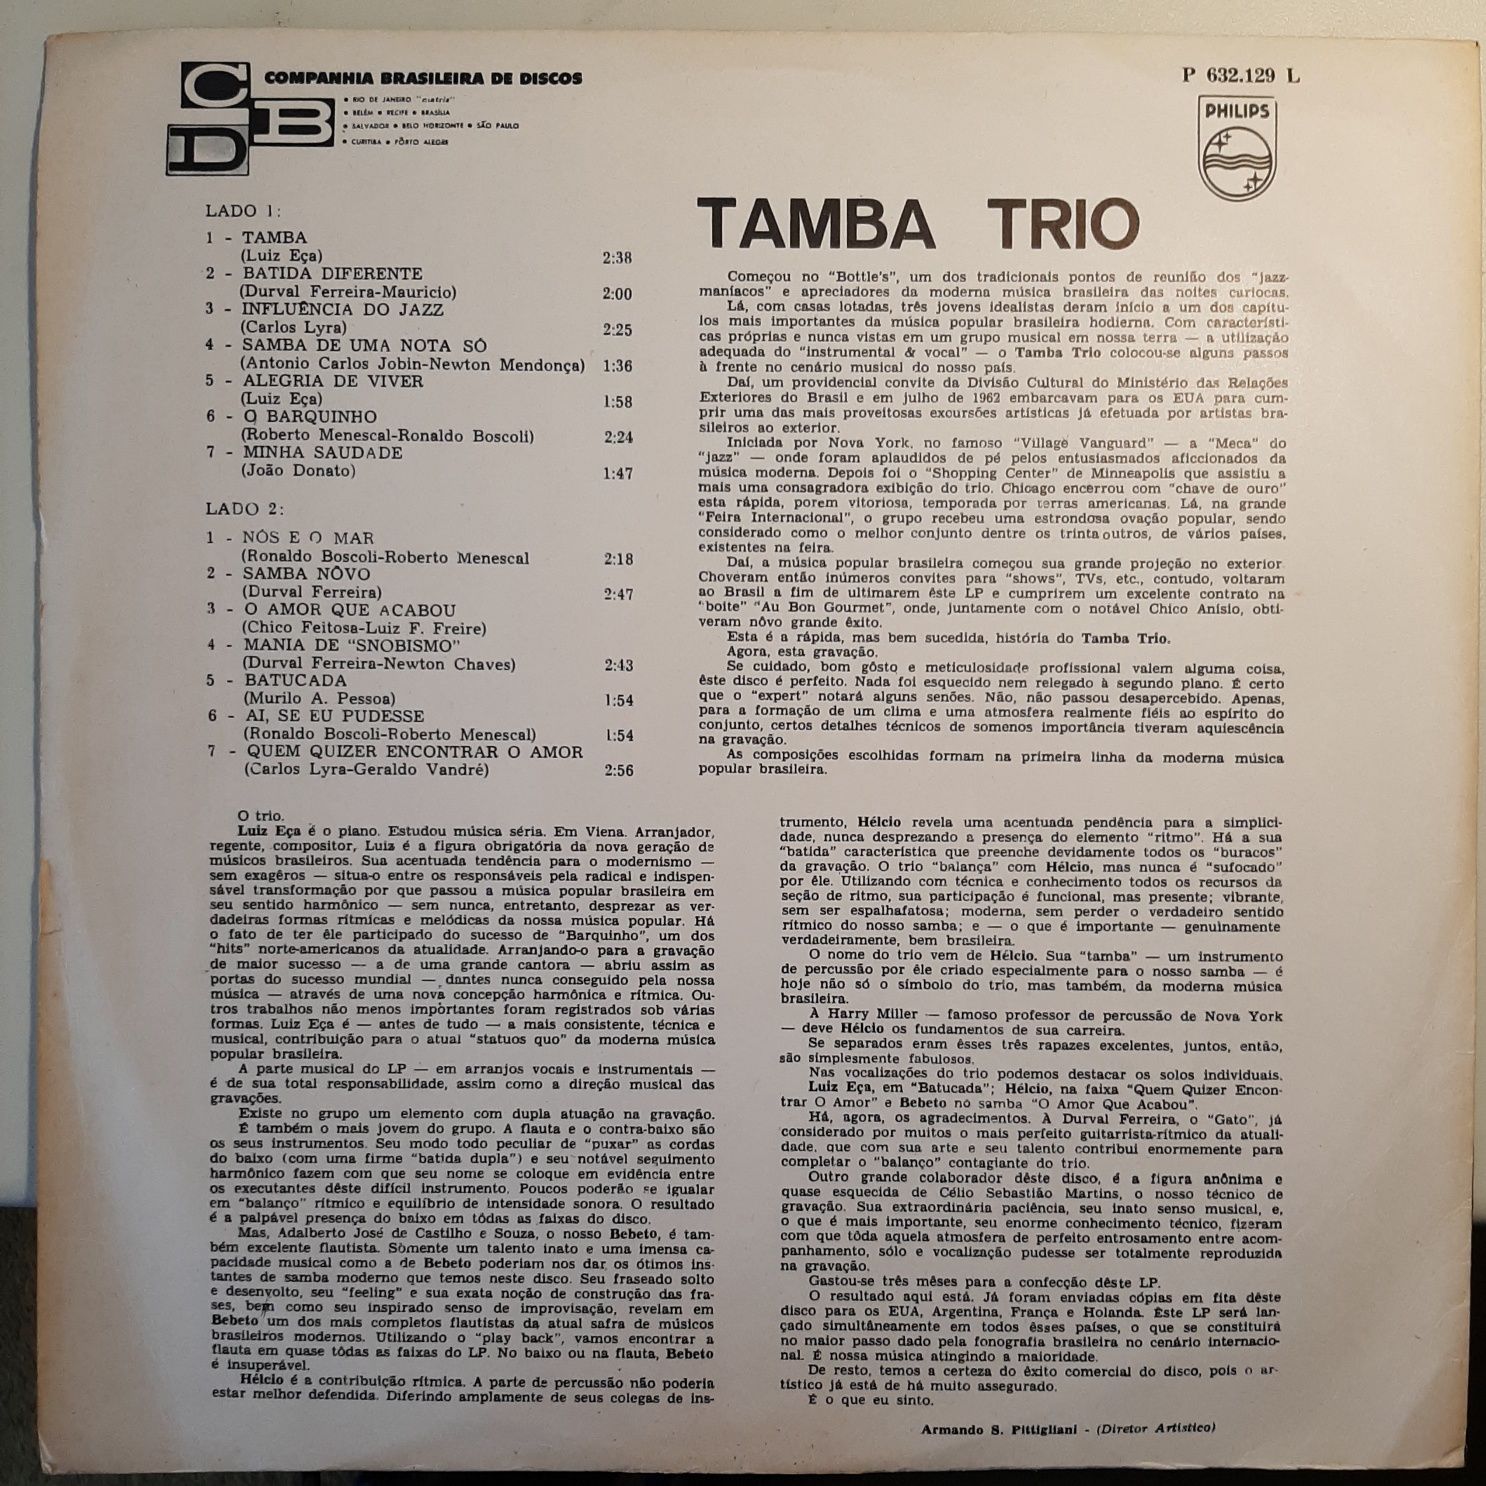 Tamba Trio raro vinil